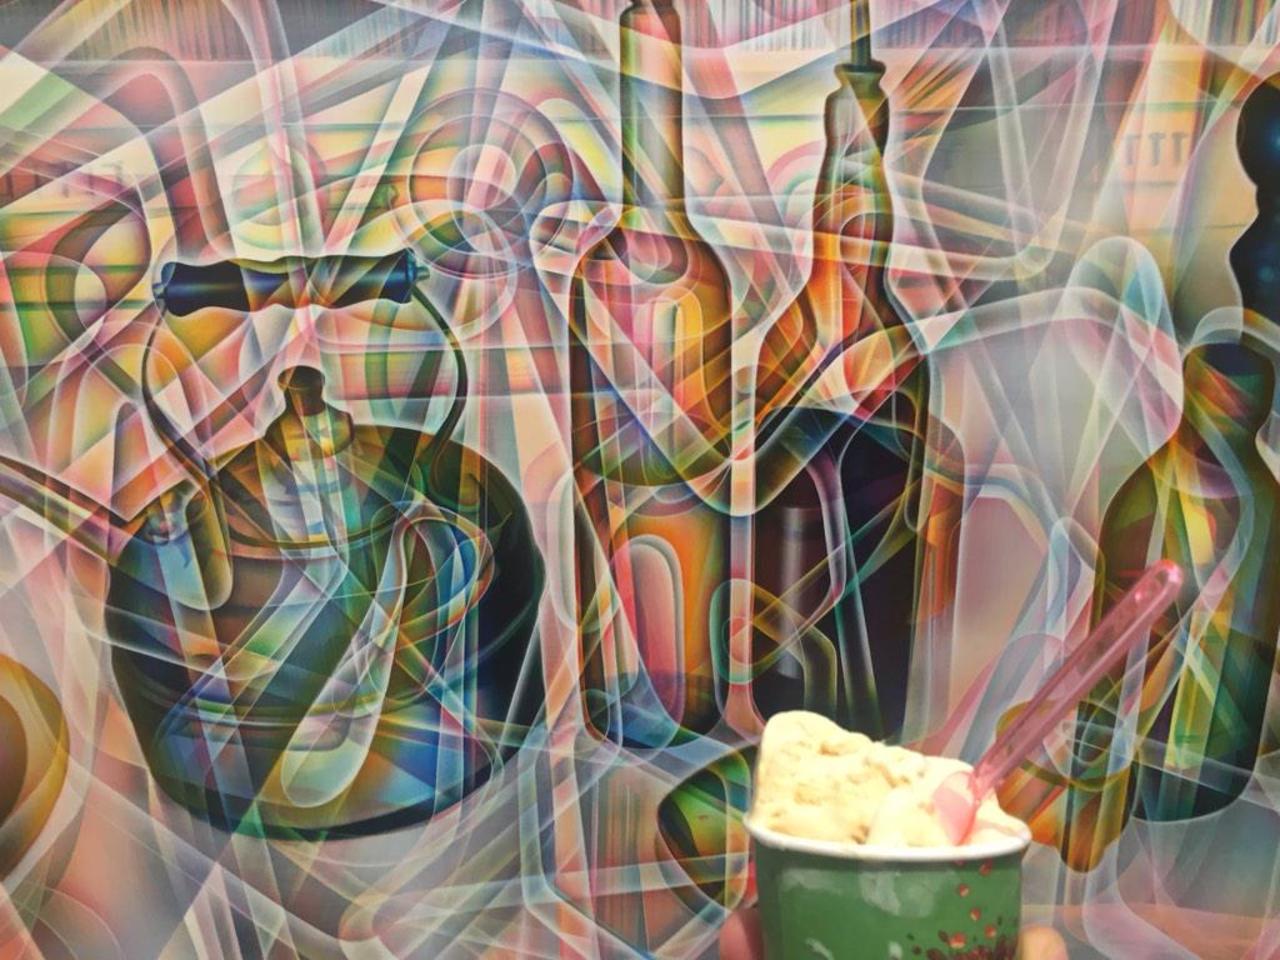 #stillLife with #gelato @ @PULSEArtFair #boothlife #miami #art @E_Leach_Gallery http://t.co/sAzqPo8pRM